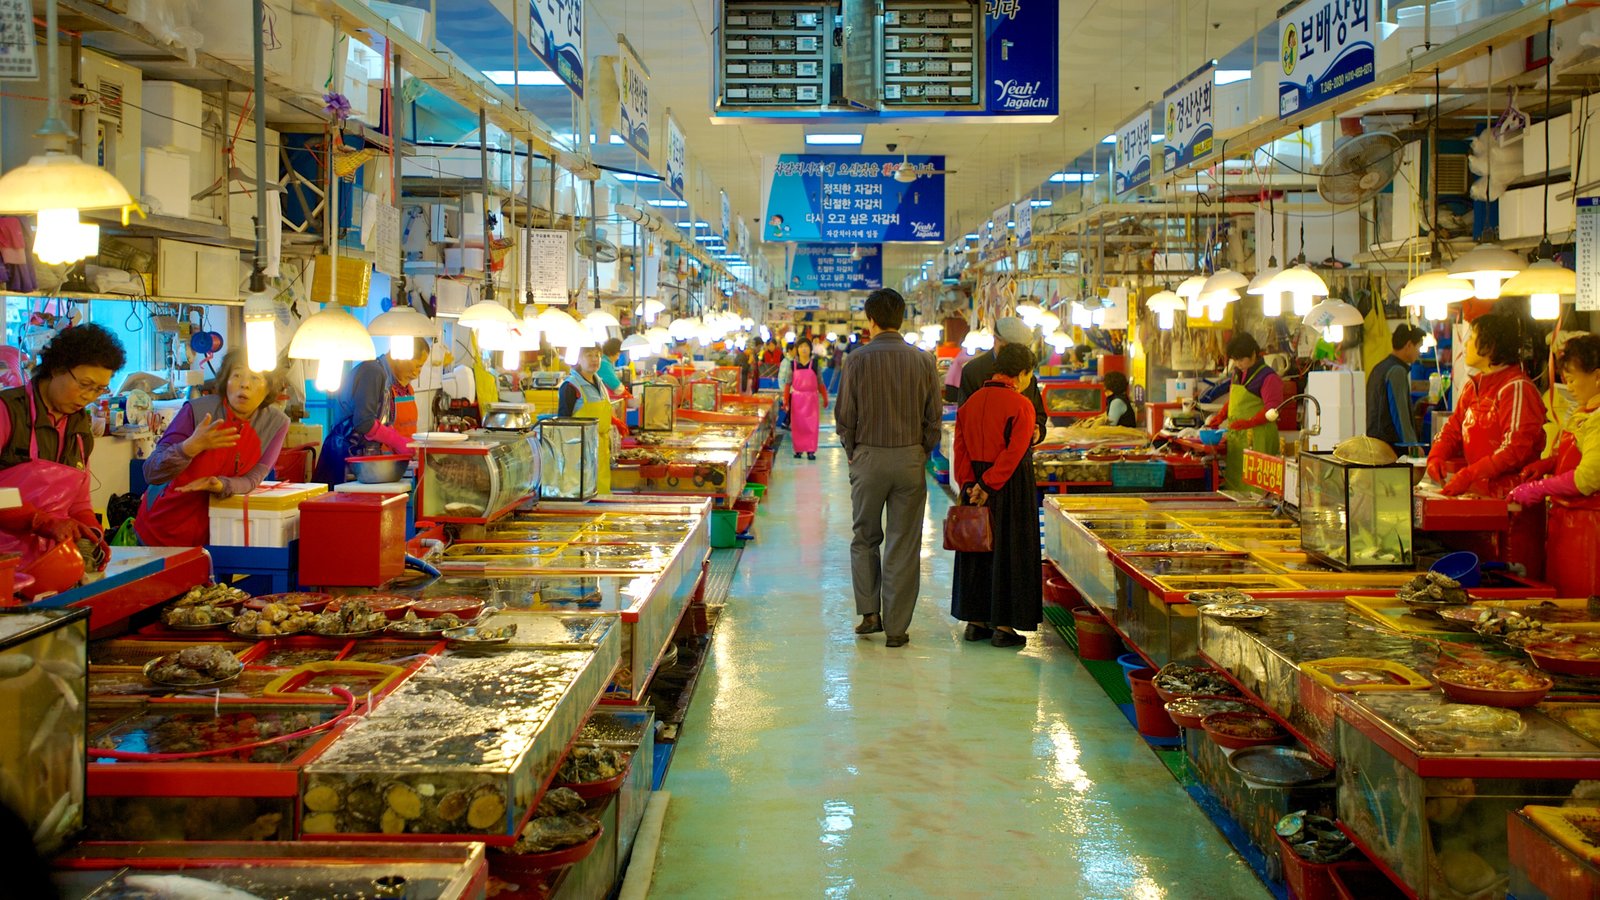 Stalls at Jagalchi Fish Market